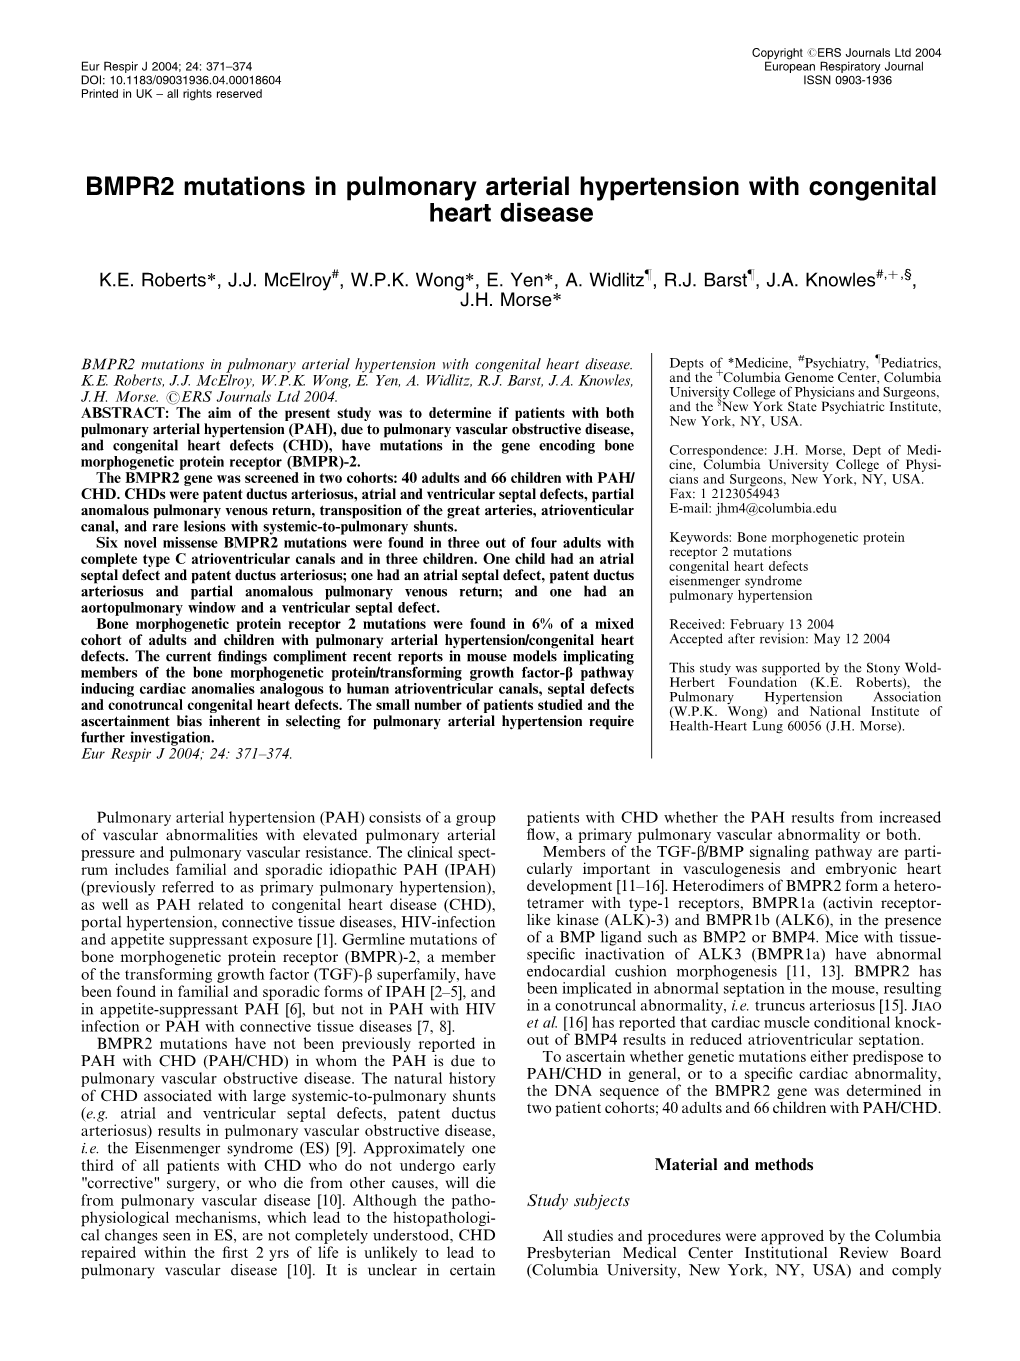 BMPR2 Mutations in Pulmonary Arterial Hypertension with Congenital Heart Disease